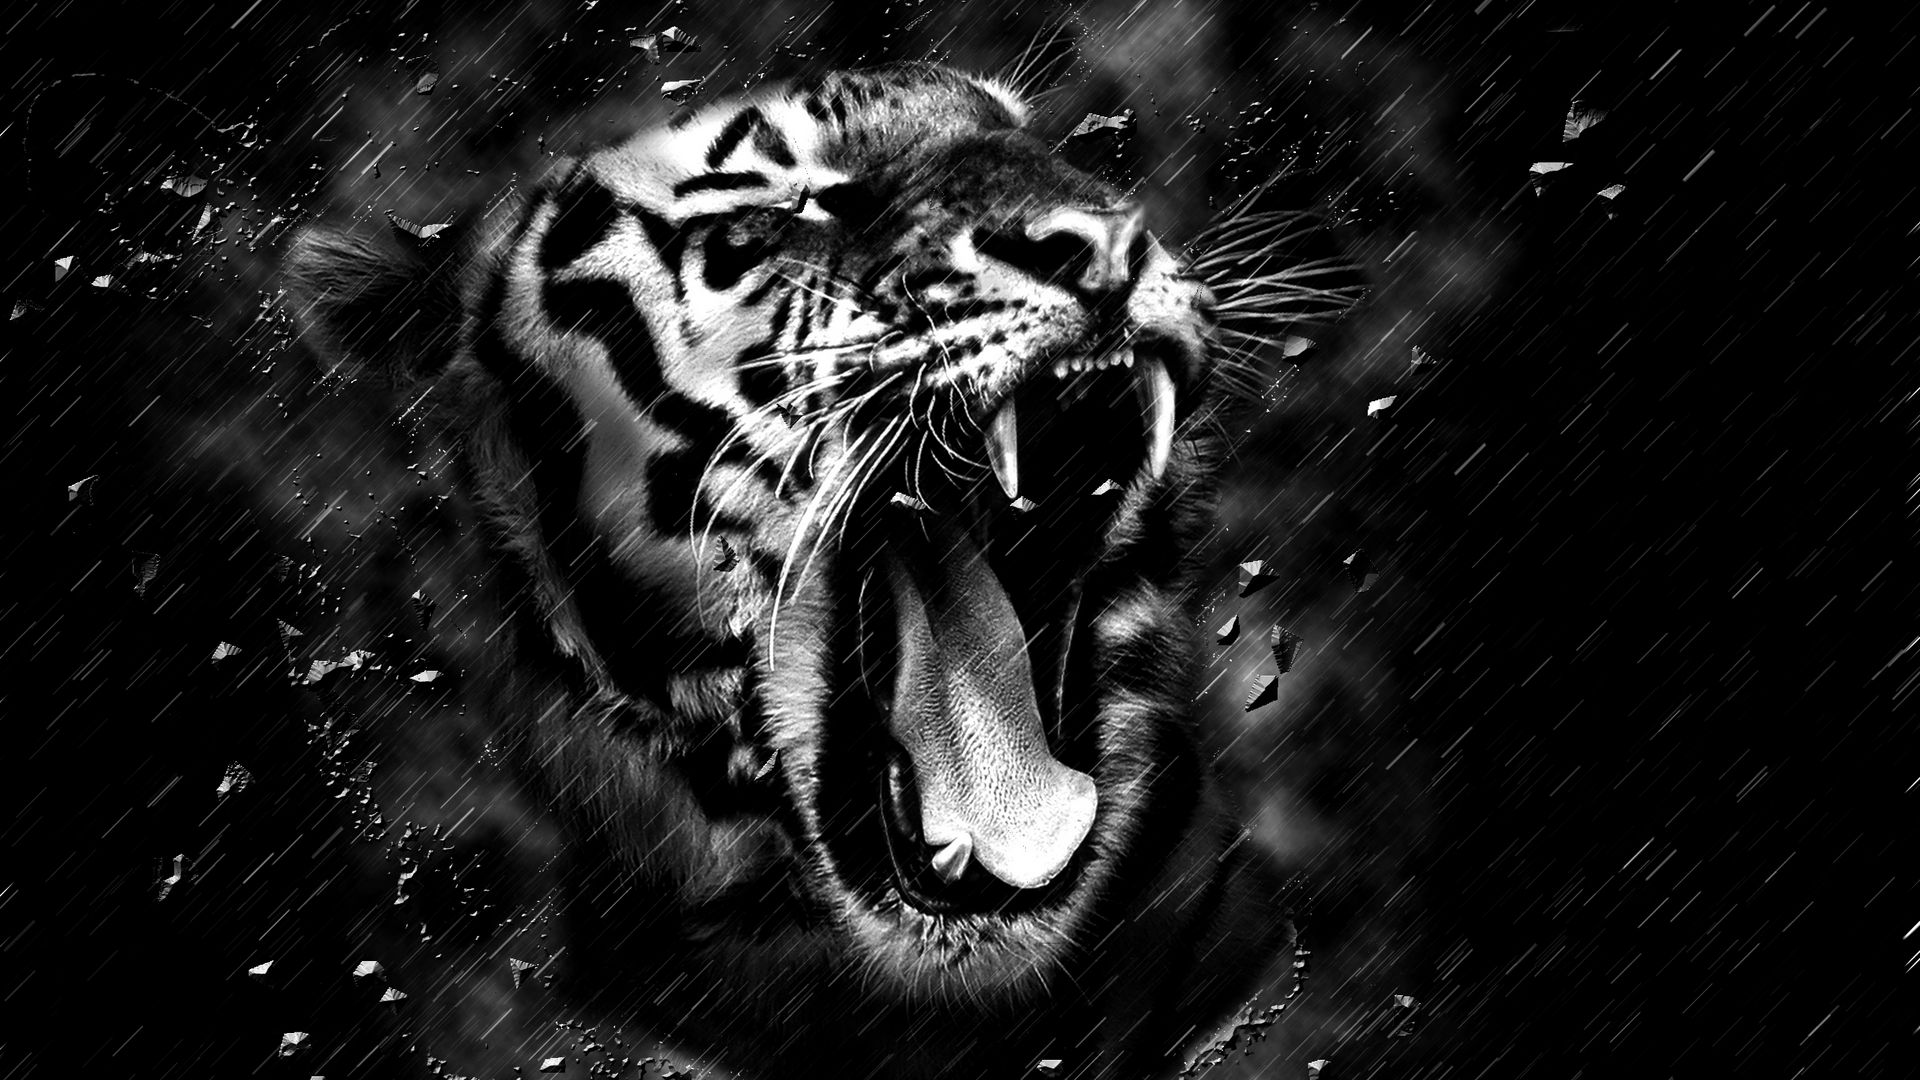 tapete 1920x1080 hd 1080p,bengalischer tiger,schwarz,brüllen,schwarz und weiß,tierwelt